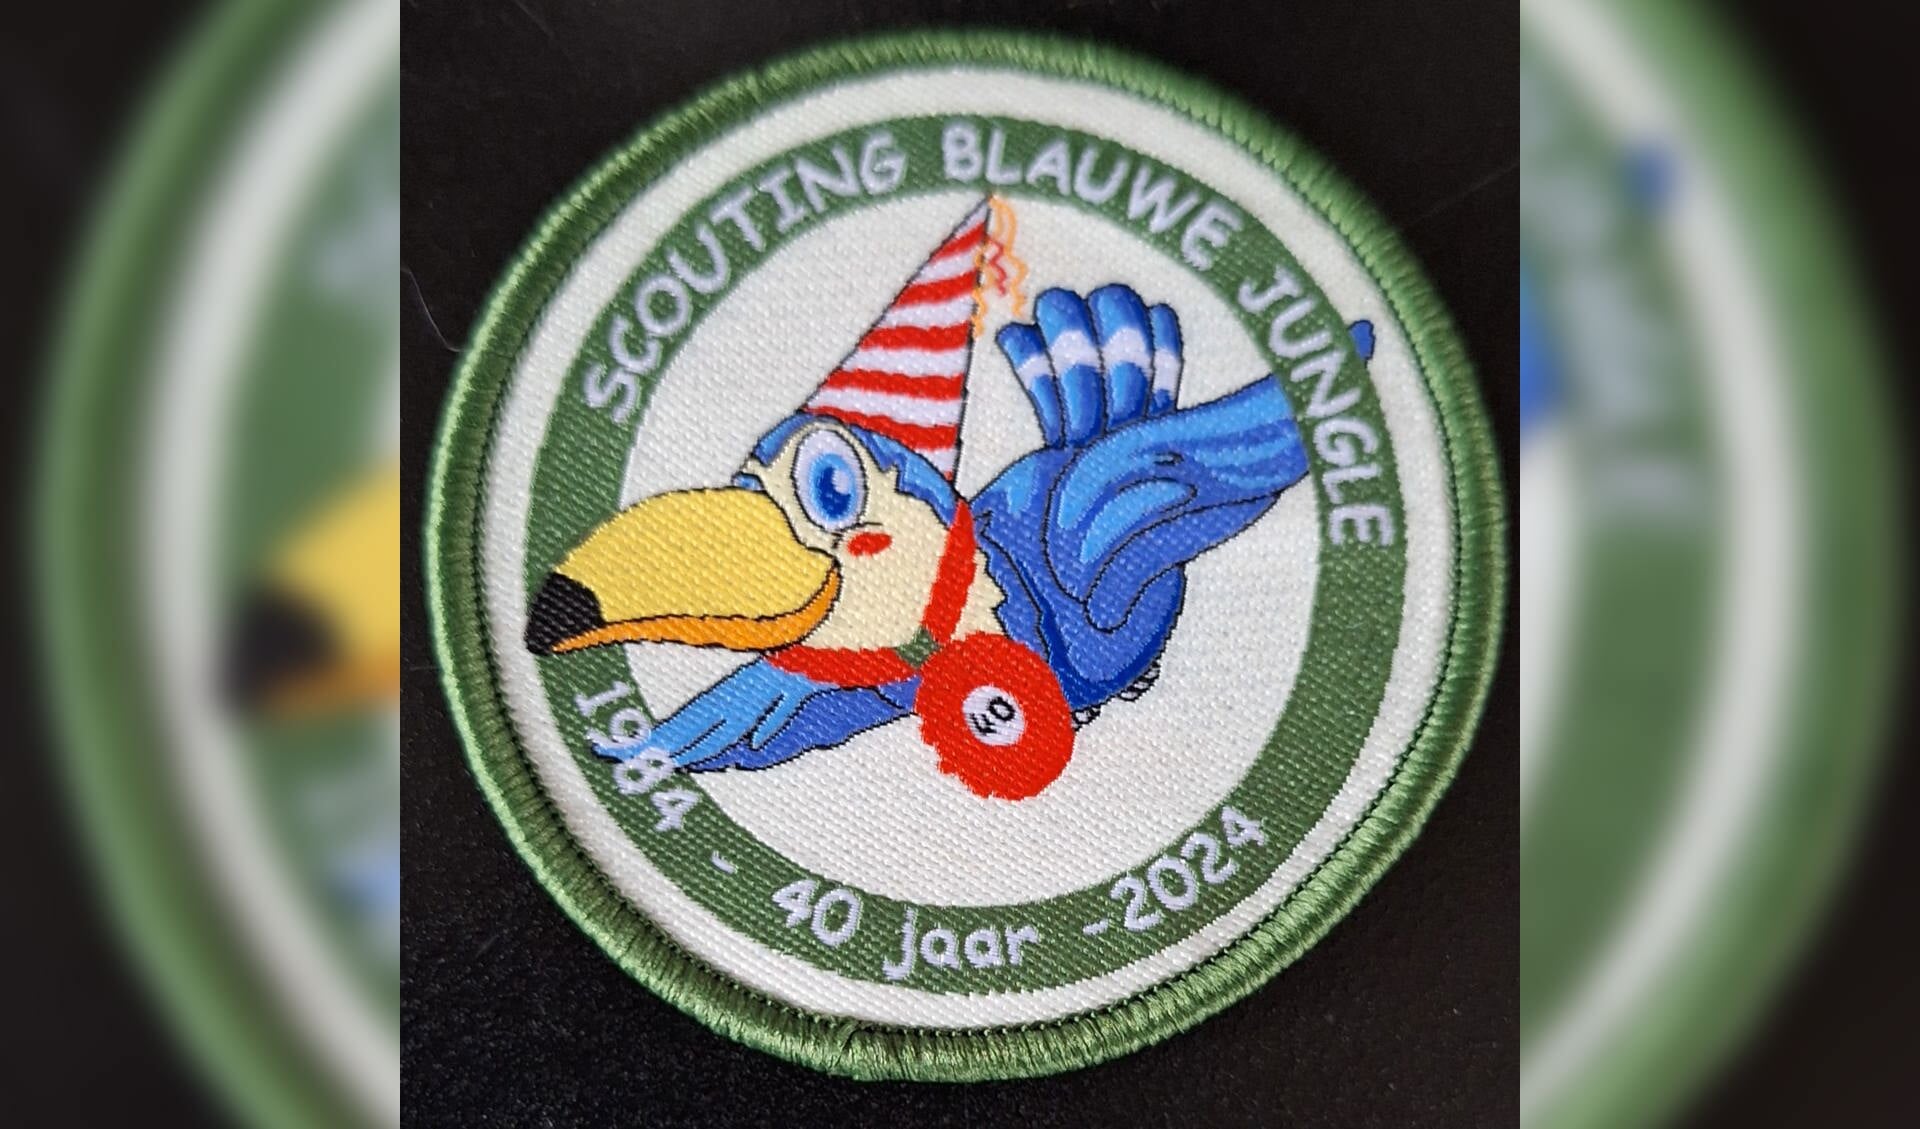 Badge 40 jaar Scouting Blauwe Jungle